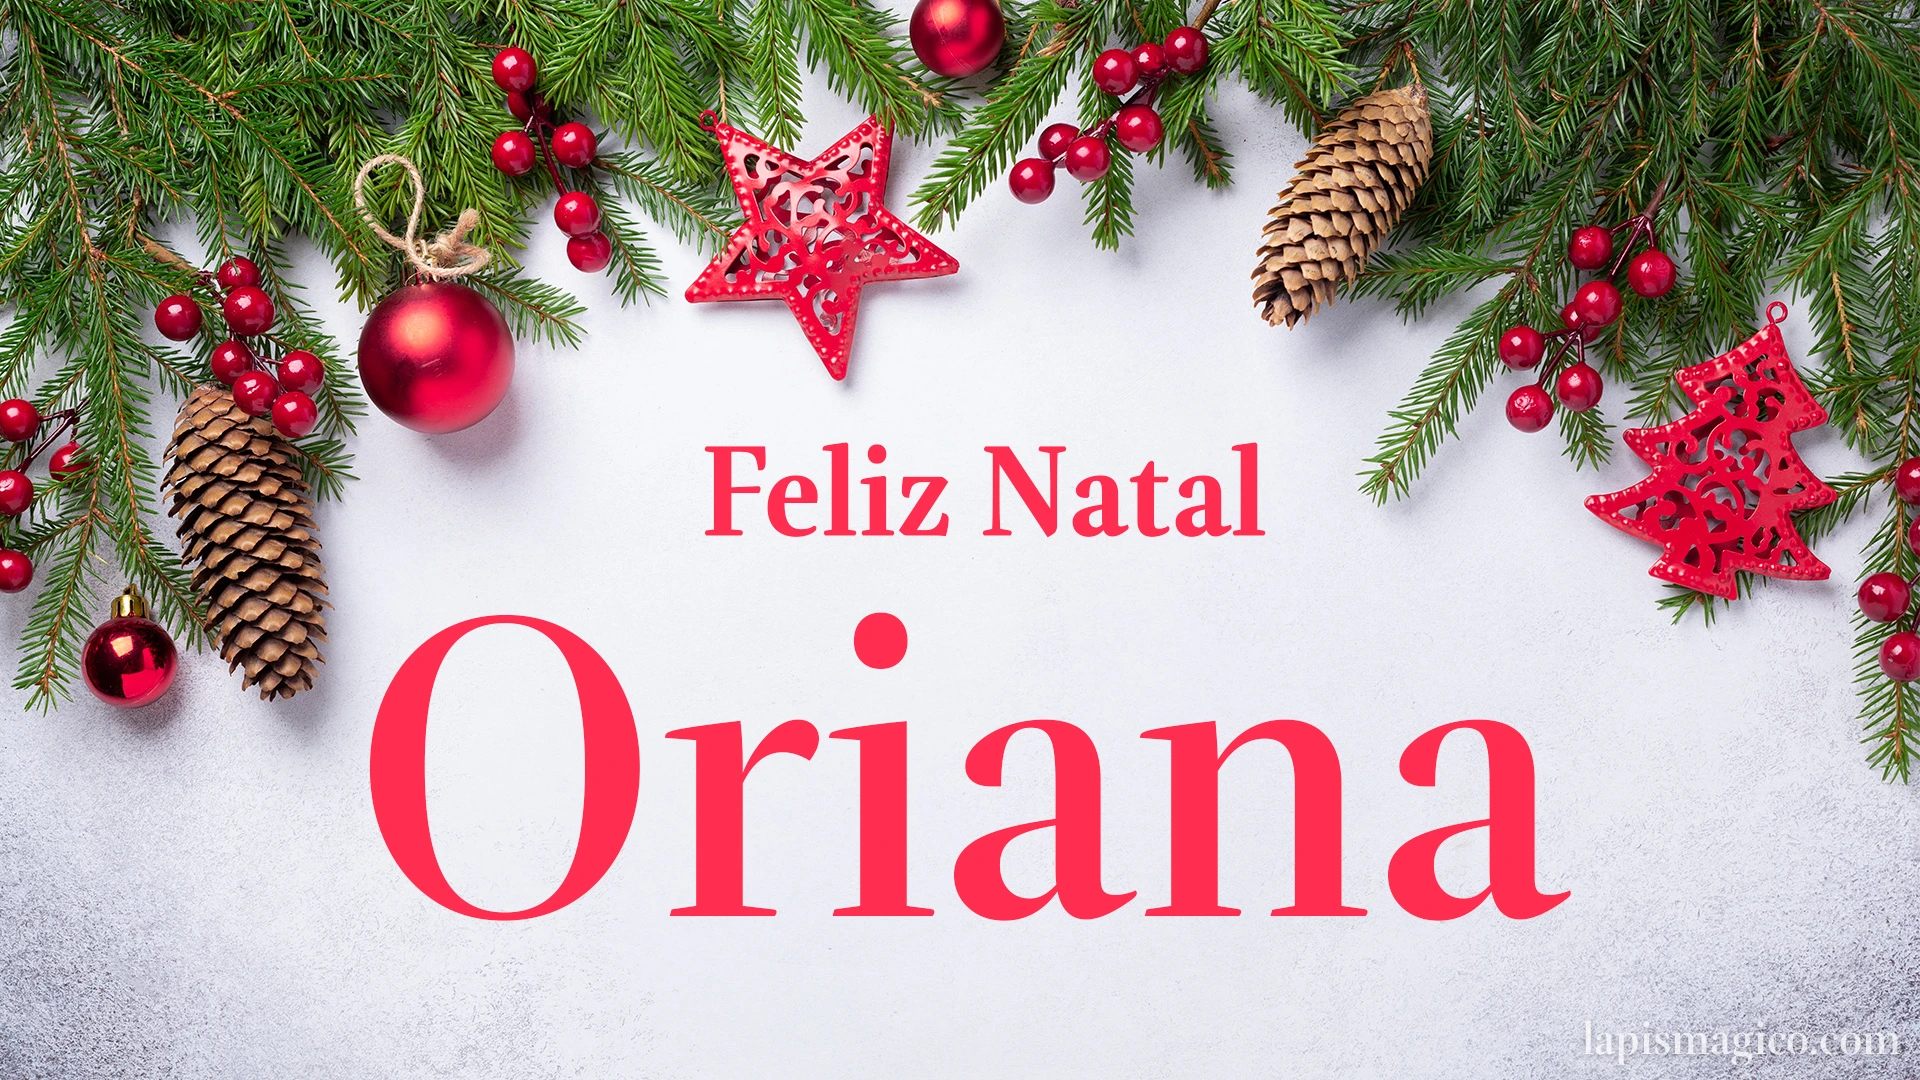 Oh Oriana, cinco postais de Feliz Natal Postal com o teu nome